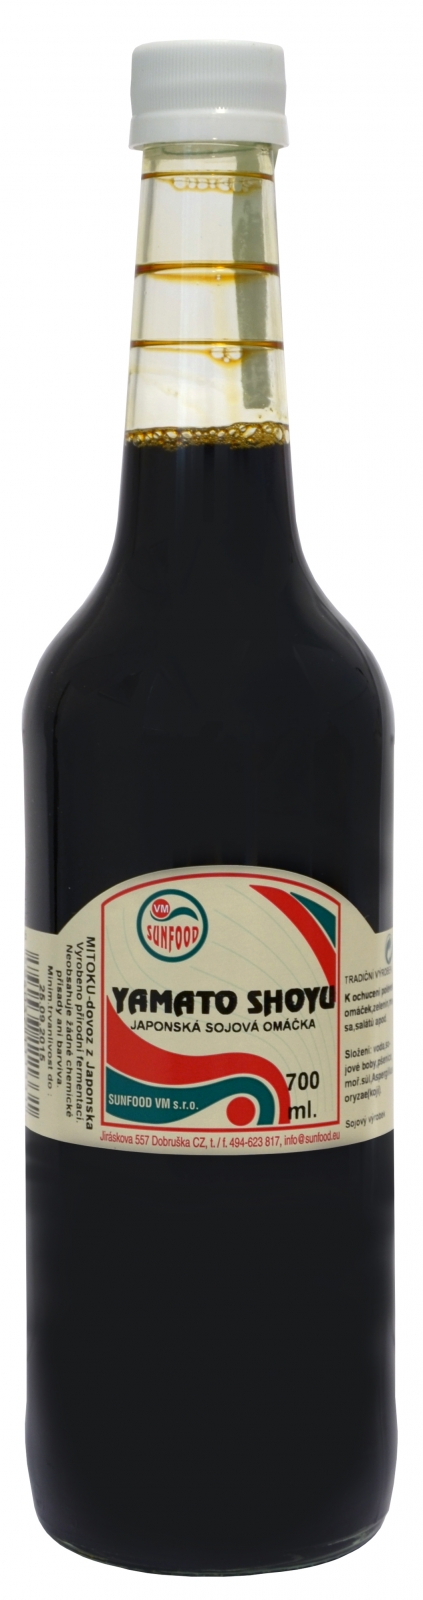 Sunfood Yamato shoyu 700 ml